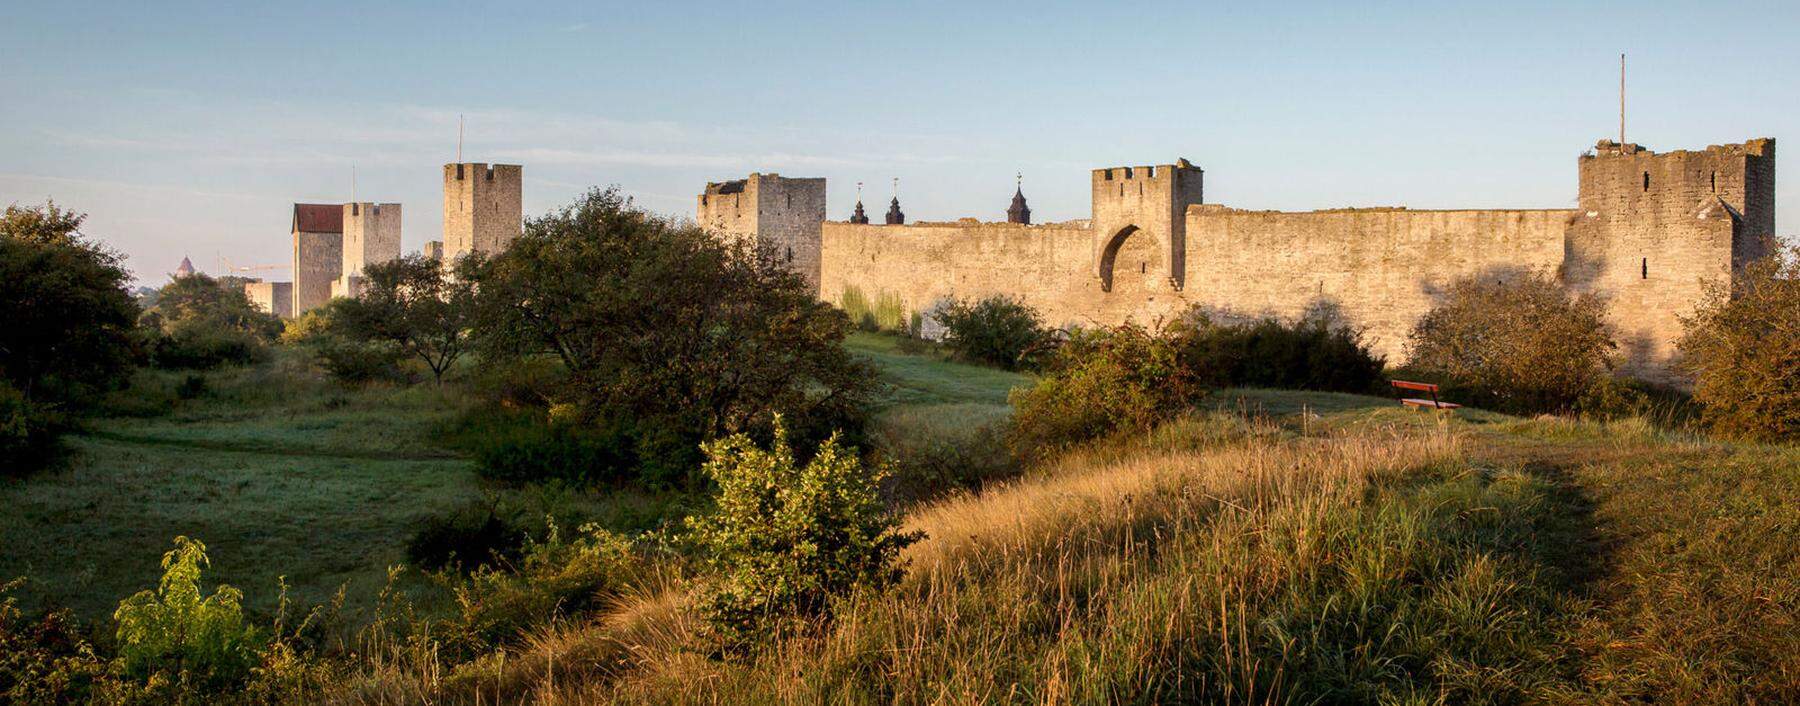 Die Stadtmauer von Visby kann man in einer Stunde umwandern.